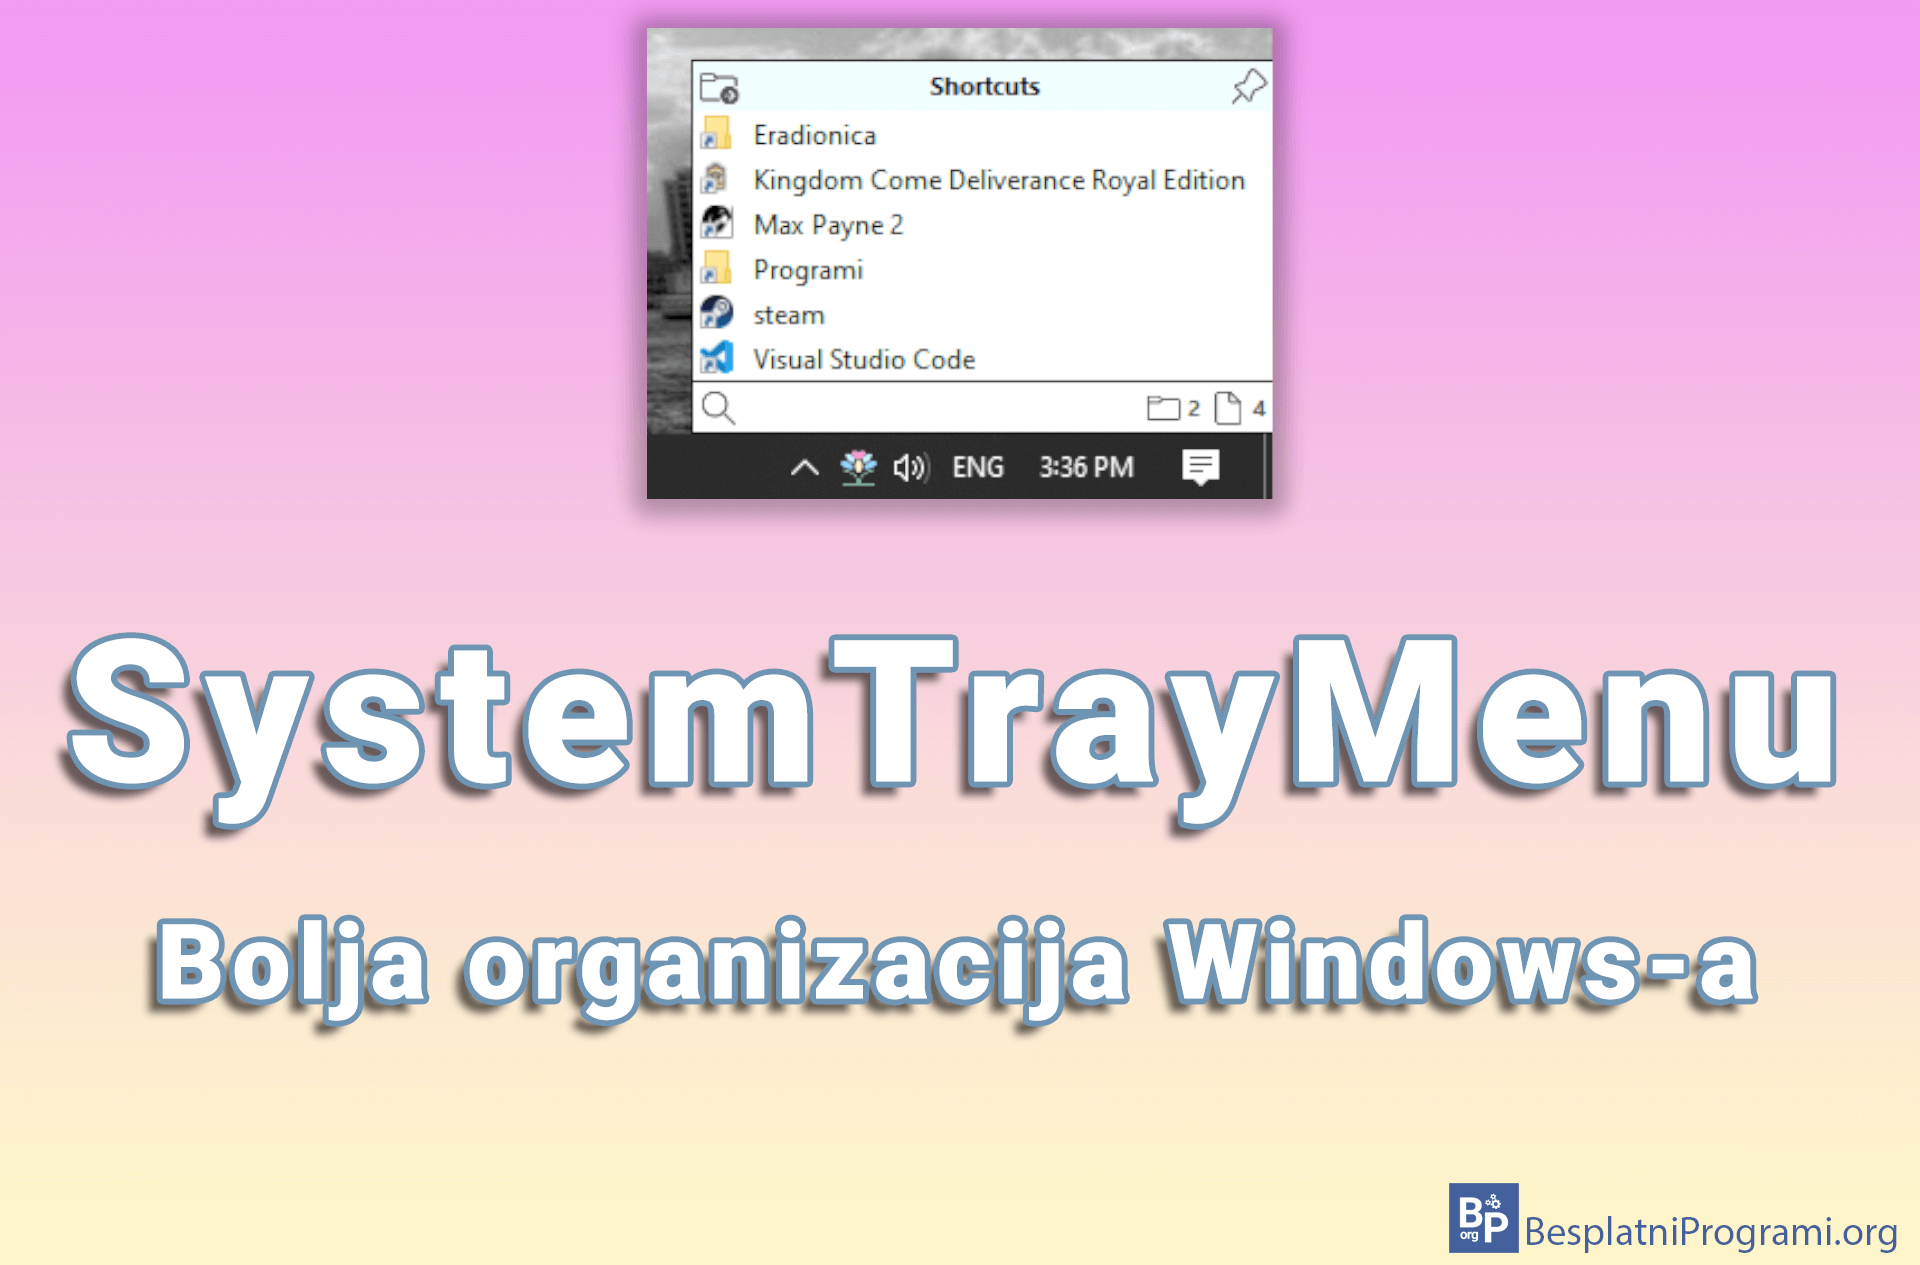 SystemTrayMenu – bolja organizacija Windows-a